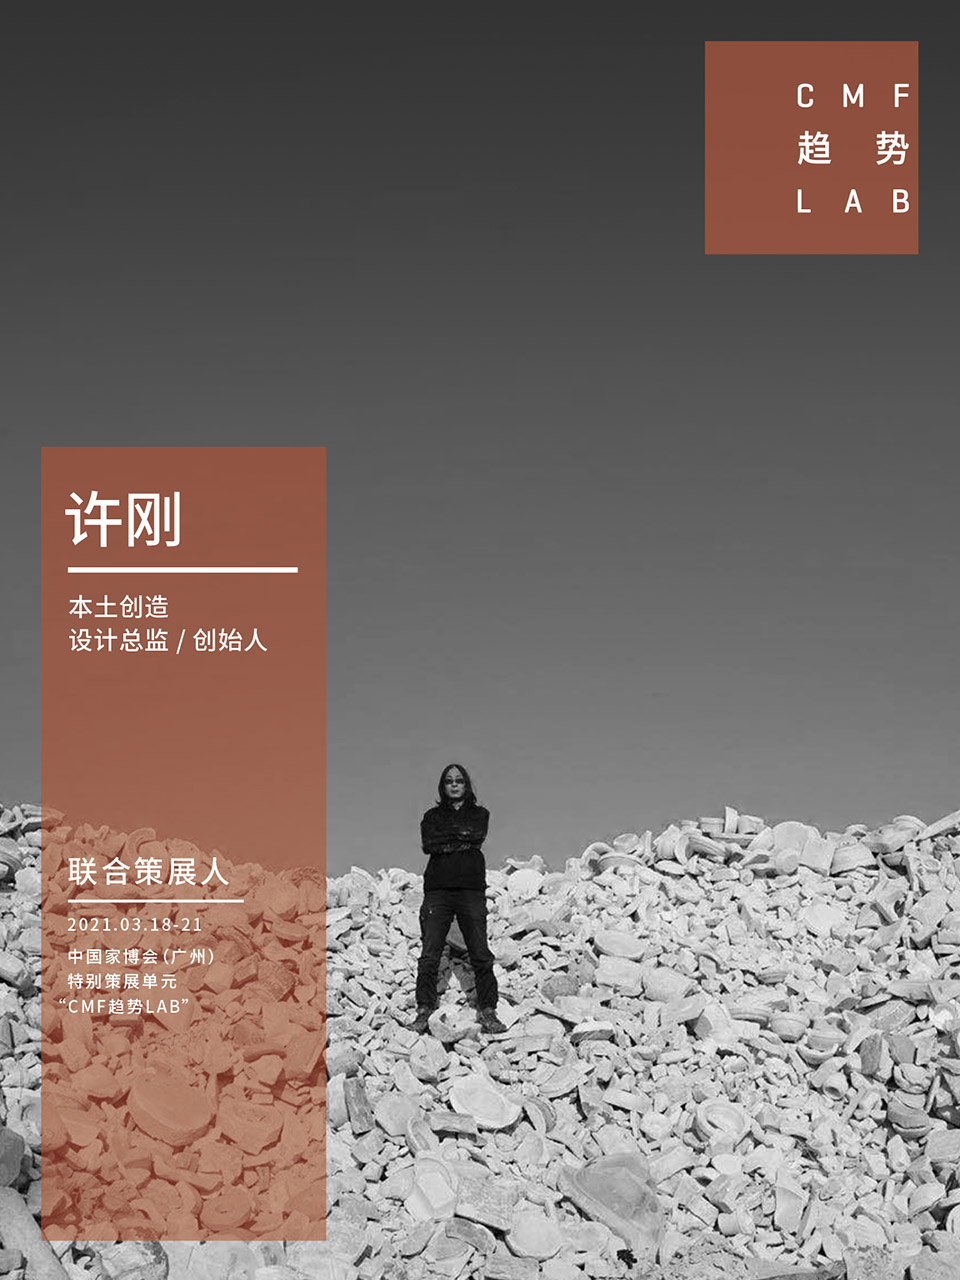 中国家博会“CMF趋势LAB” 四大主题实验室全新发布/“虚拟重构实验室”、“融手艺材料实验室”、“精致懒实验室”、“无废实验室”
-64